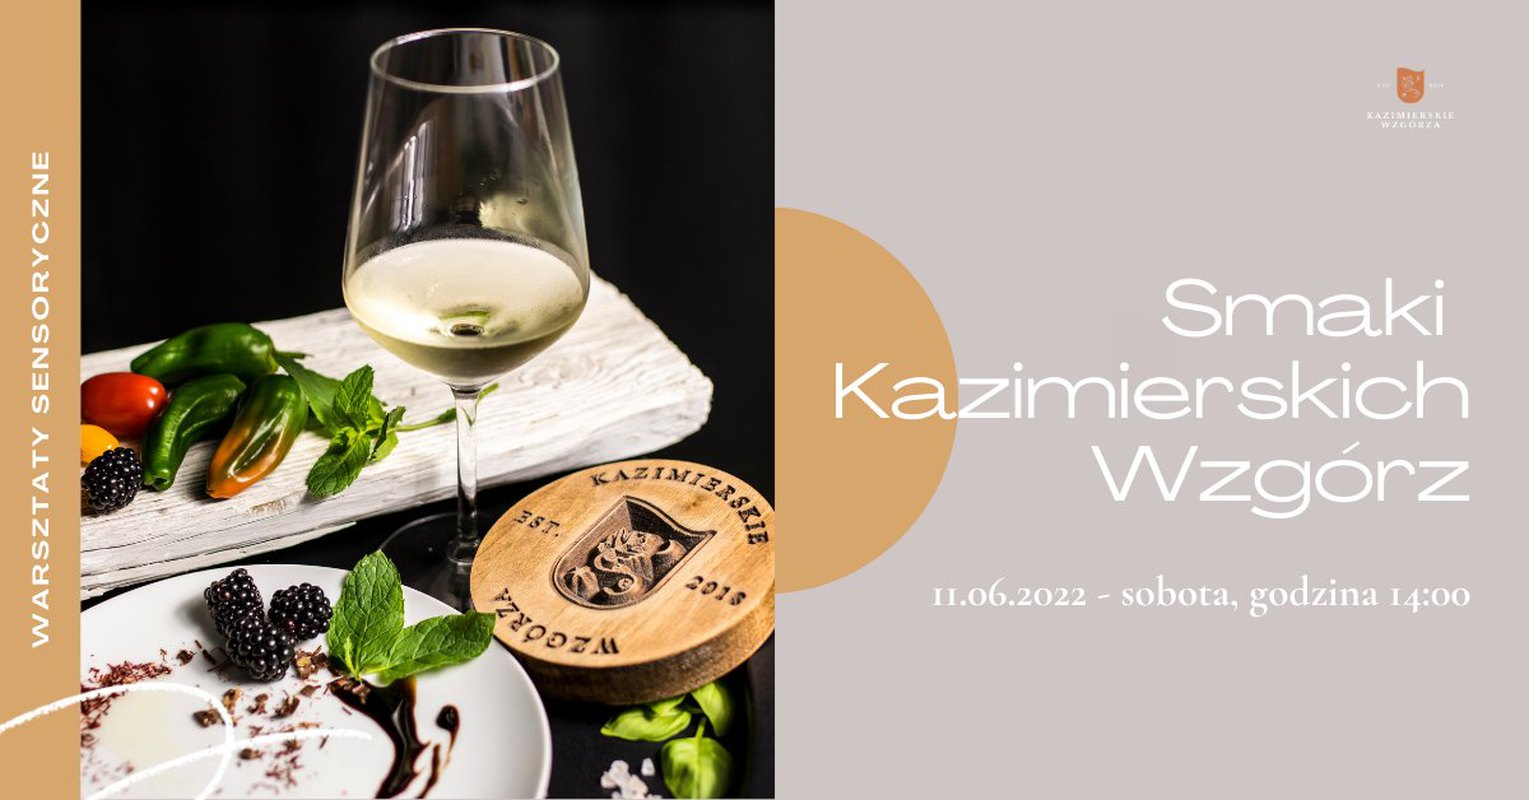 Smaki Kazimierskich Wzgórz - warsztaty sensoryczne - Jak powstaje wino?